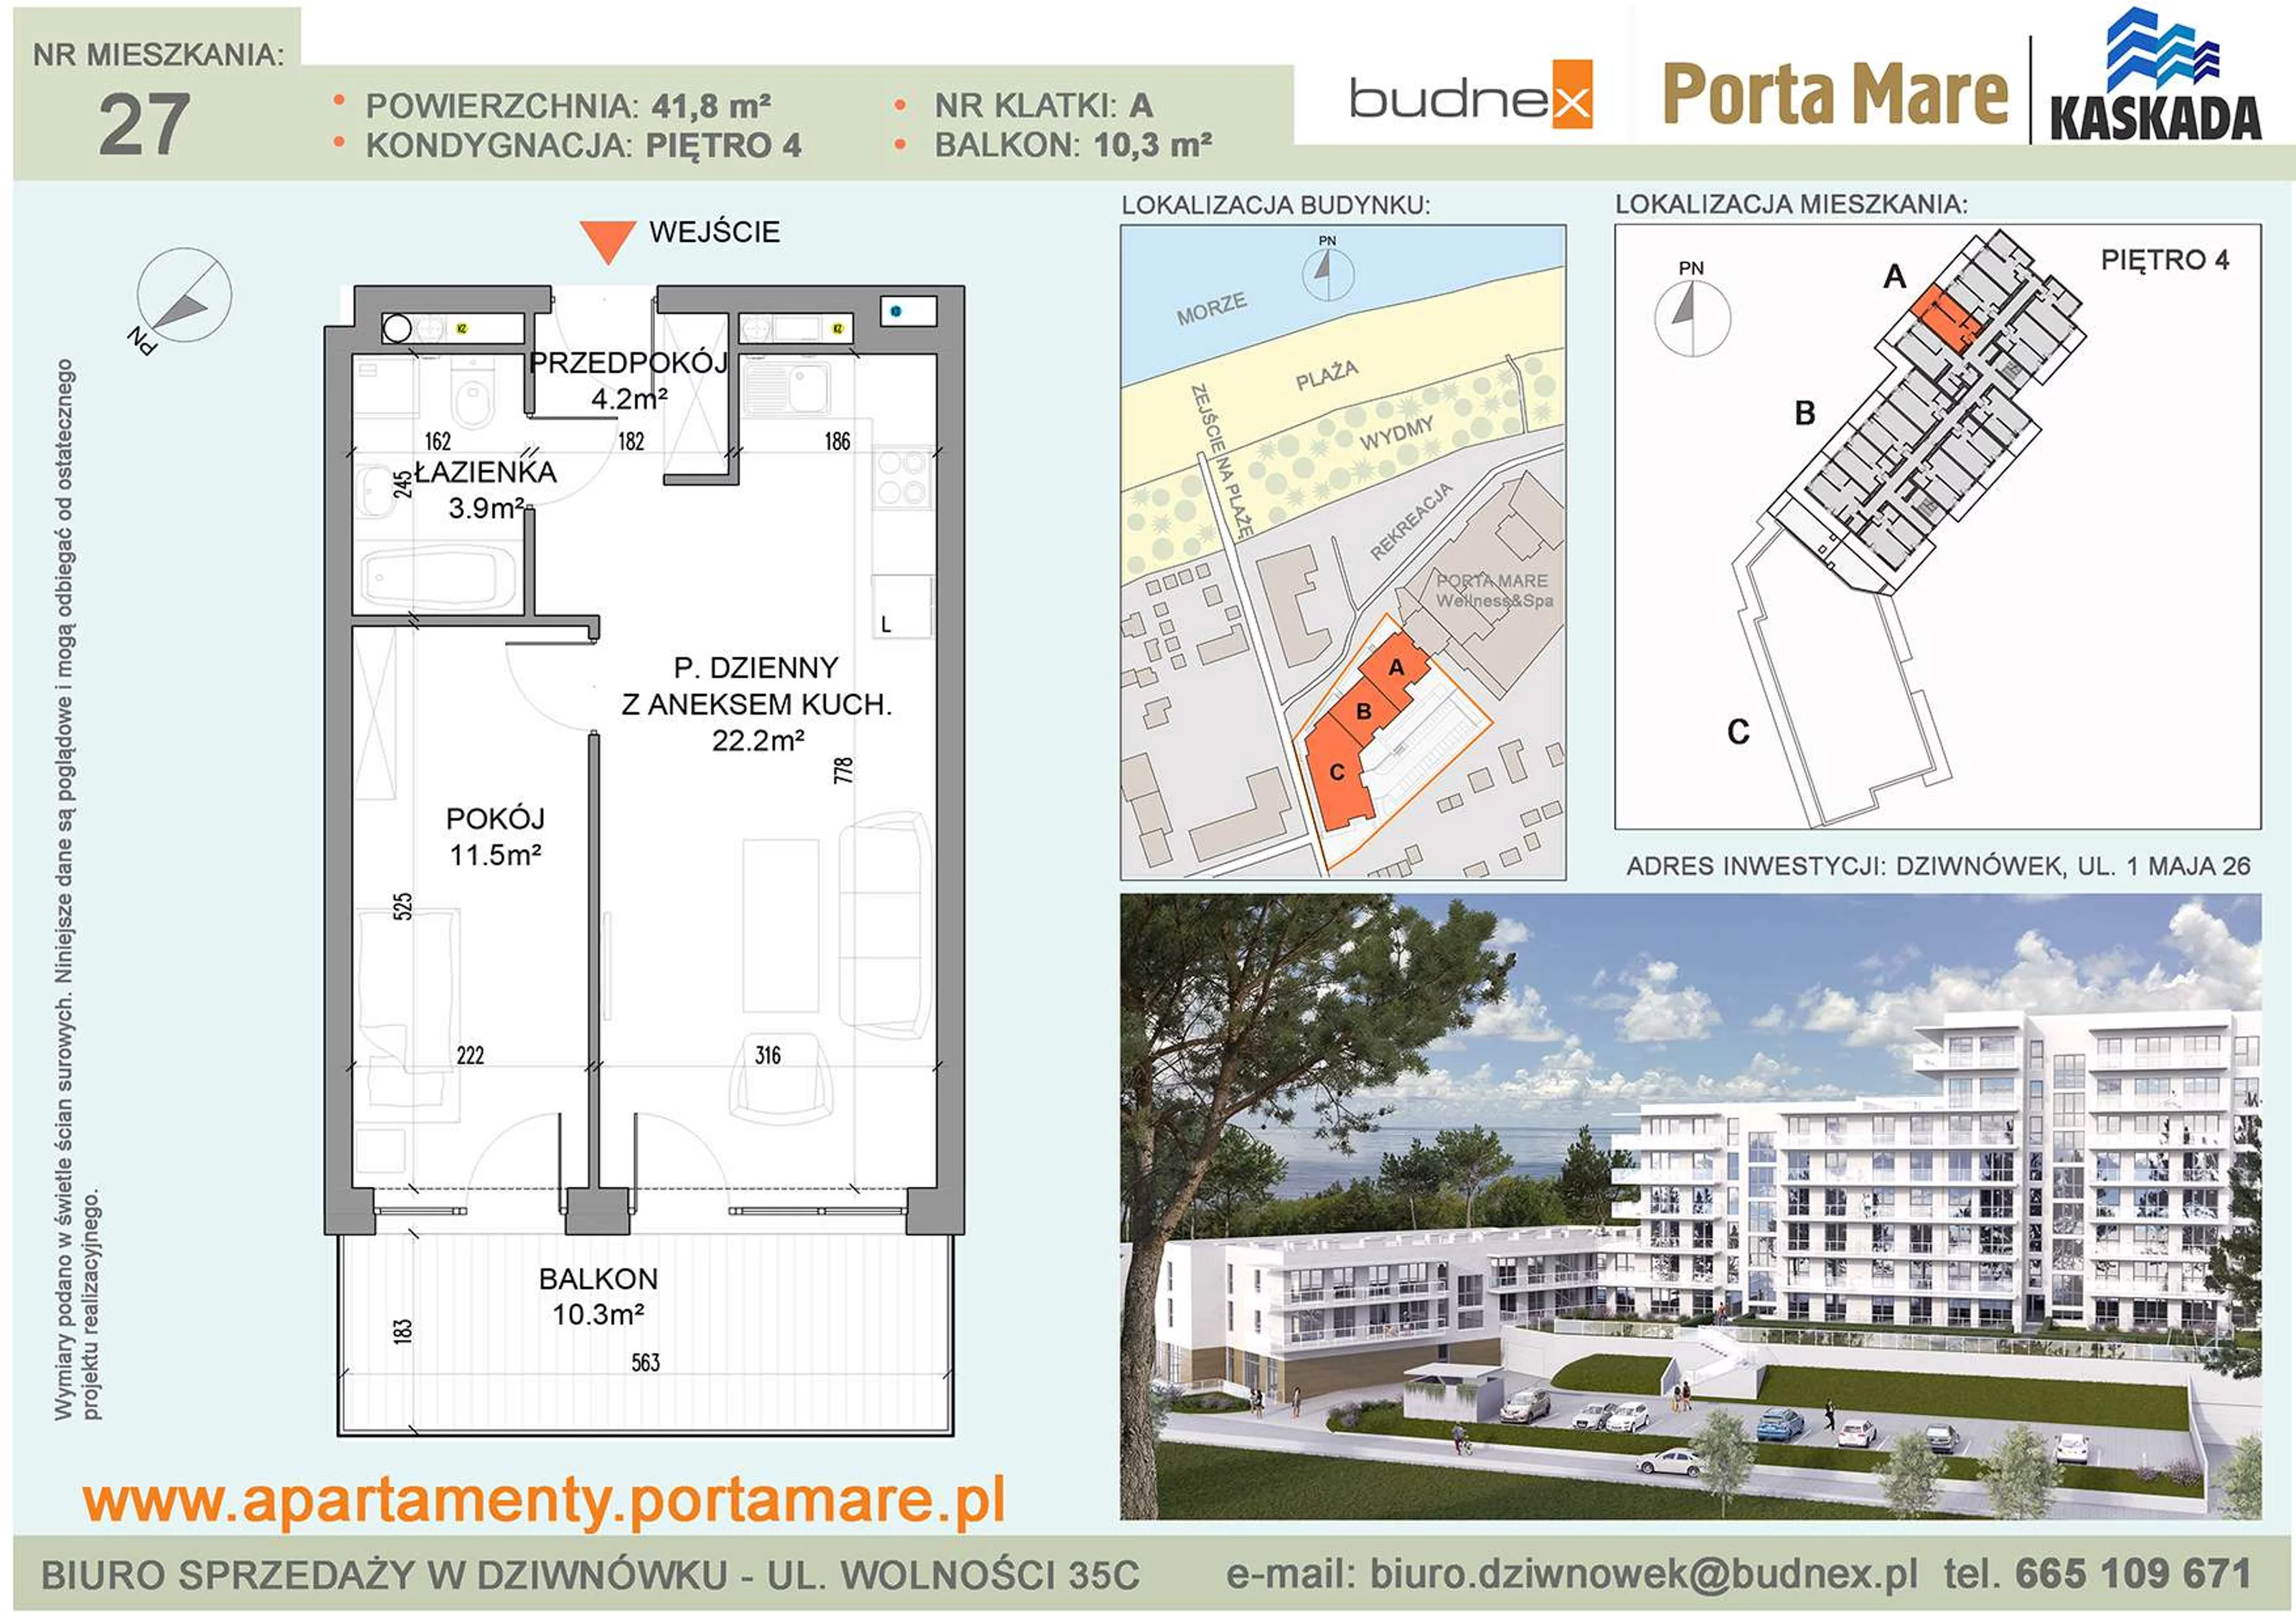 Mieszkanie 41,80 m², piętro 4, oferta nr A/M27, Porta Mare Kaskada, Dziwnówek, ul. 1 Maja 26